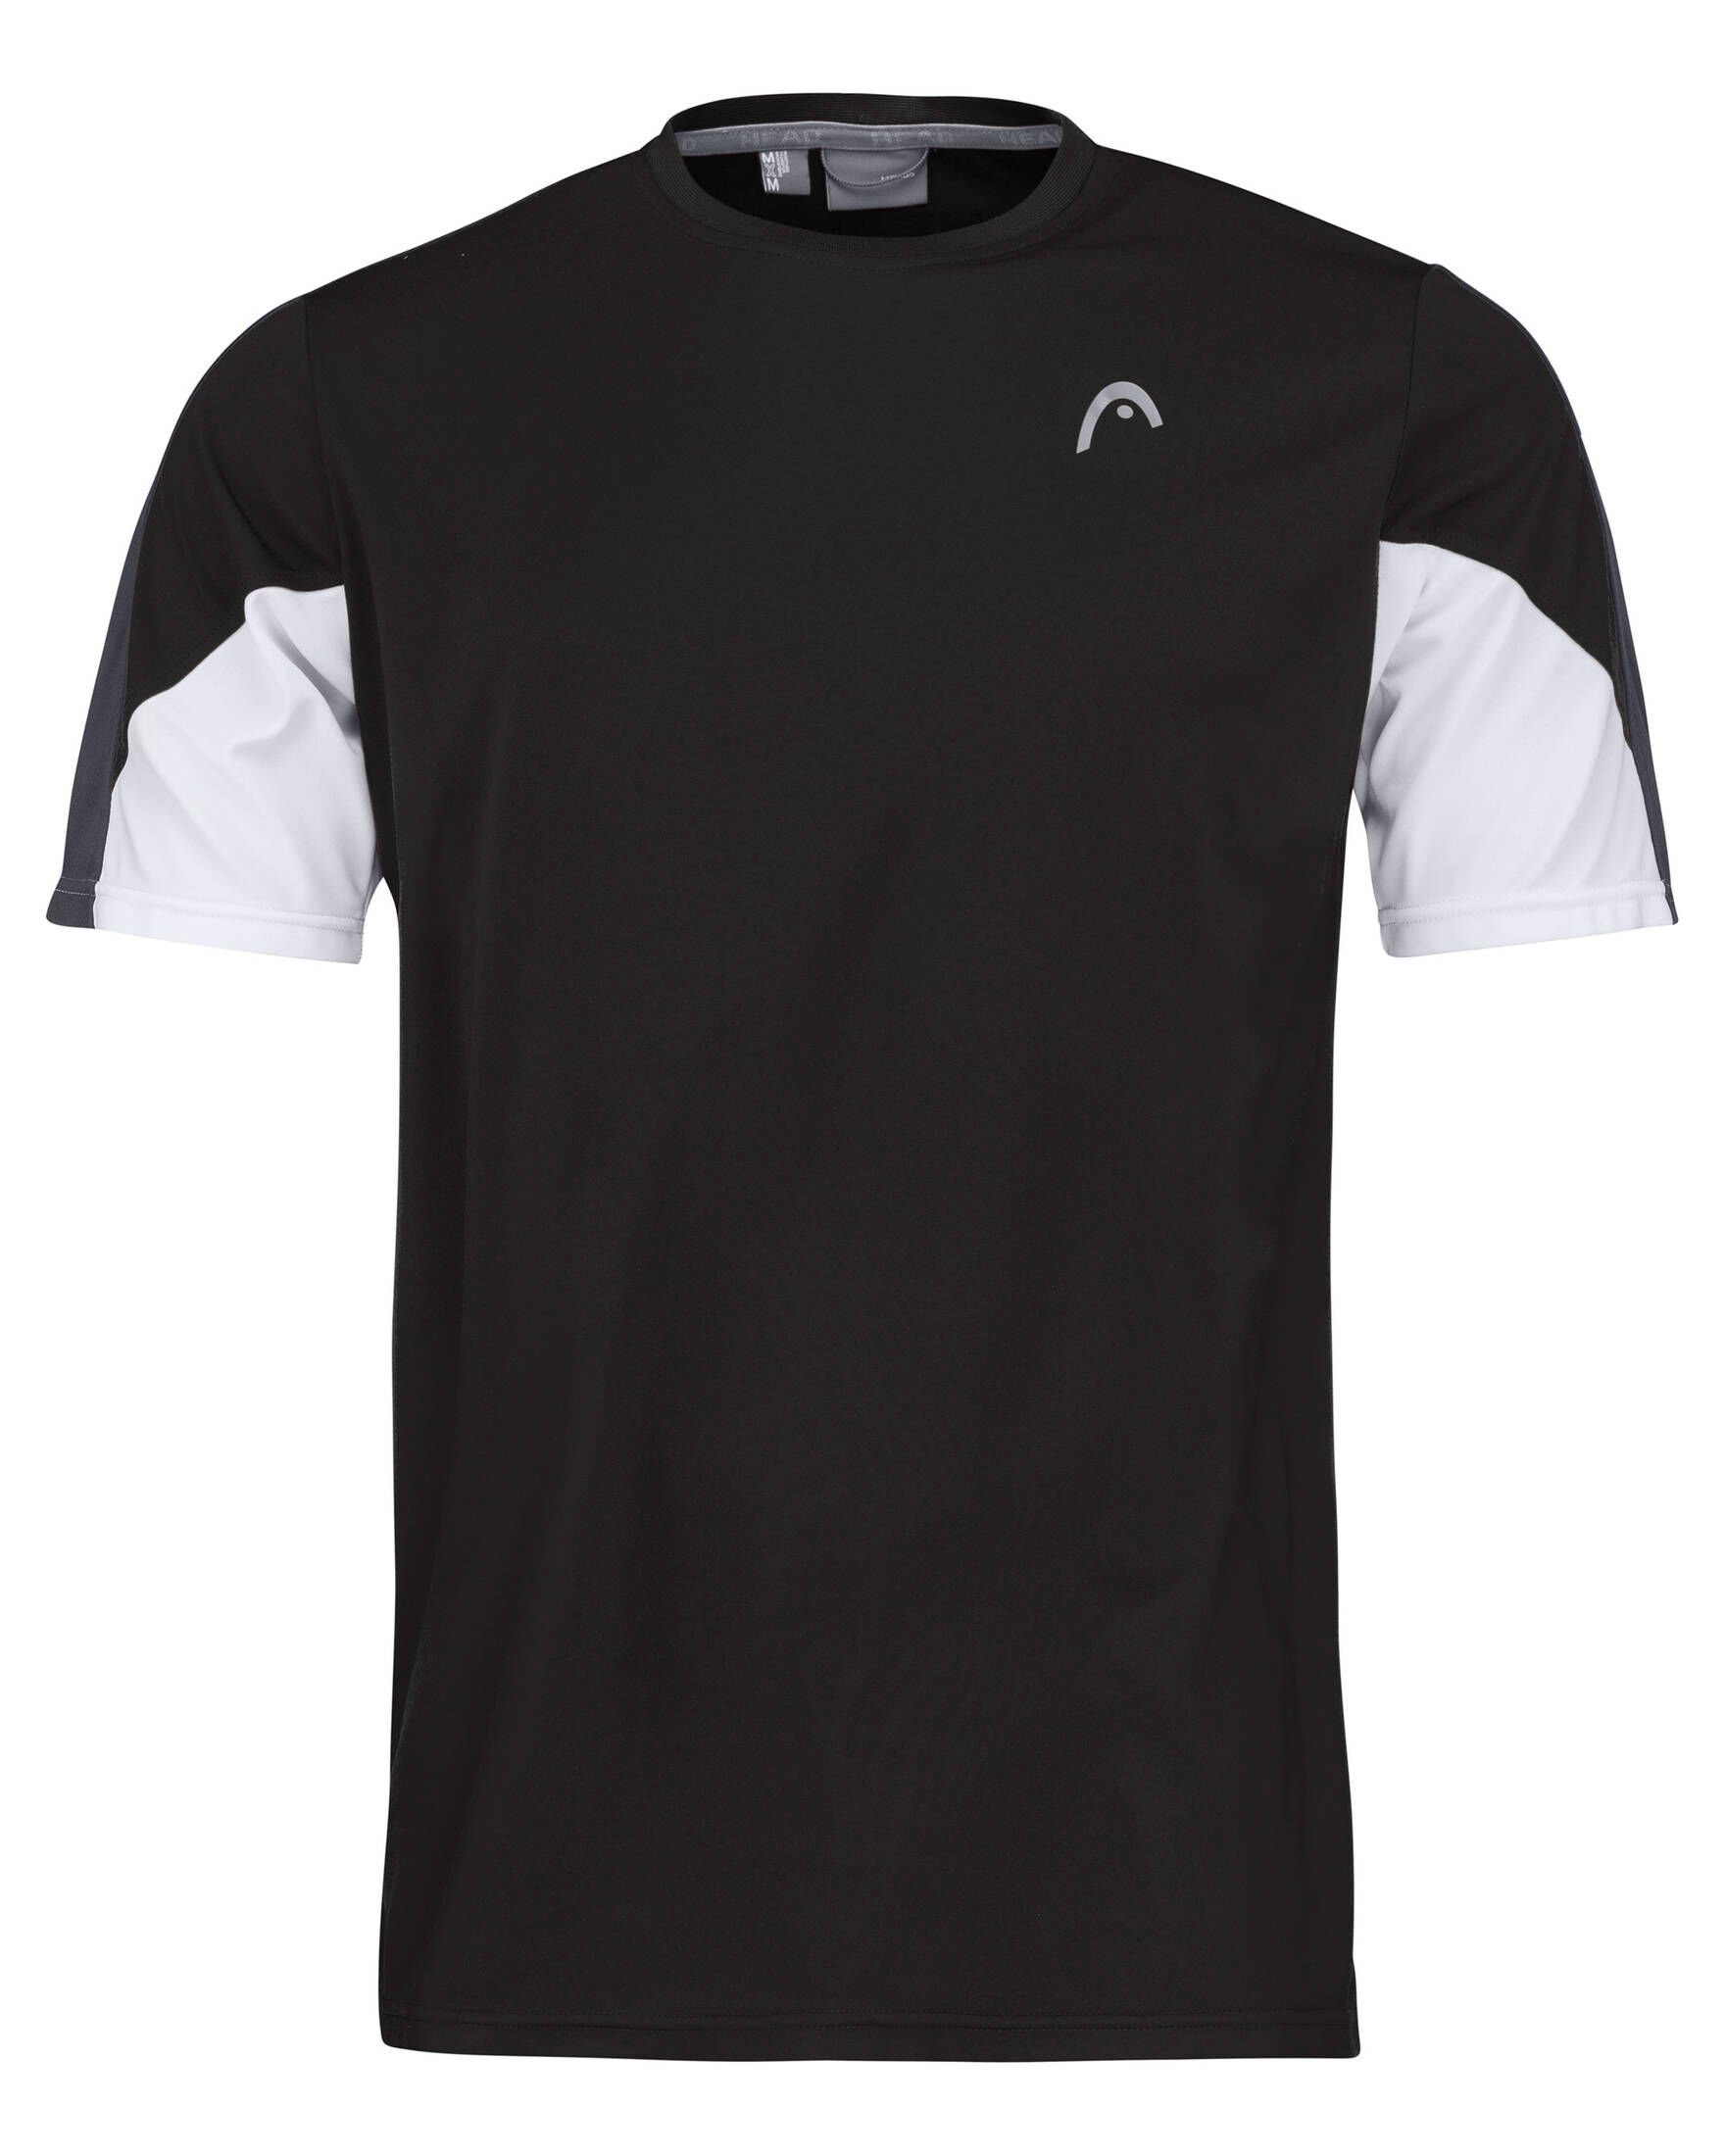 22 schwarz Tennisshirt (200) TECH Head Herren CLUB Tennisshirt